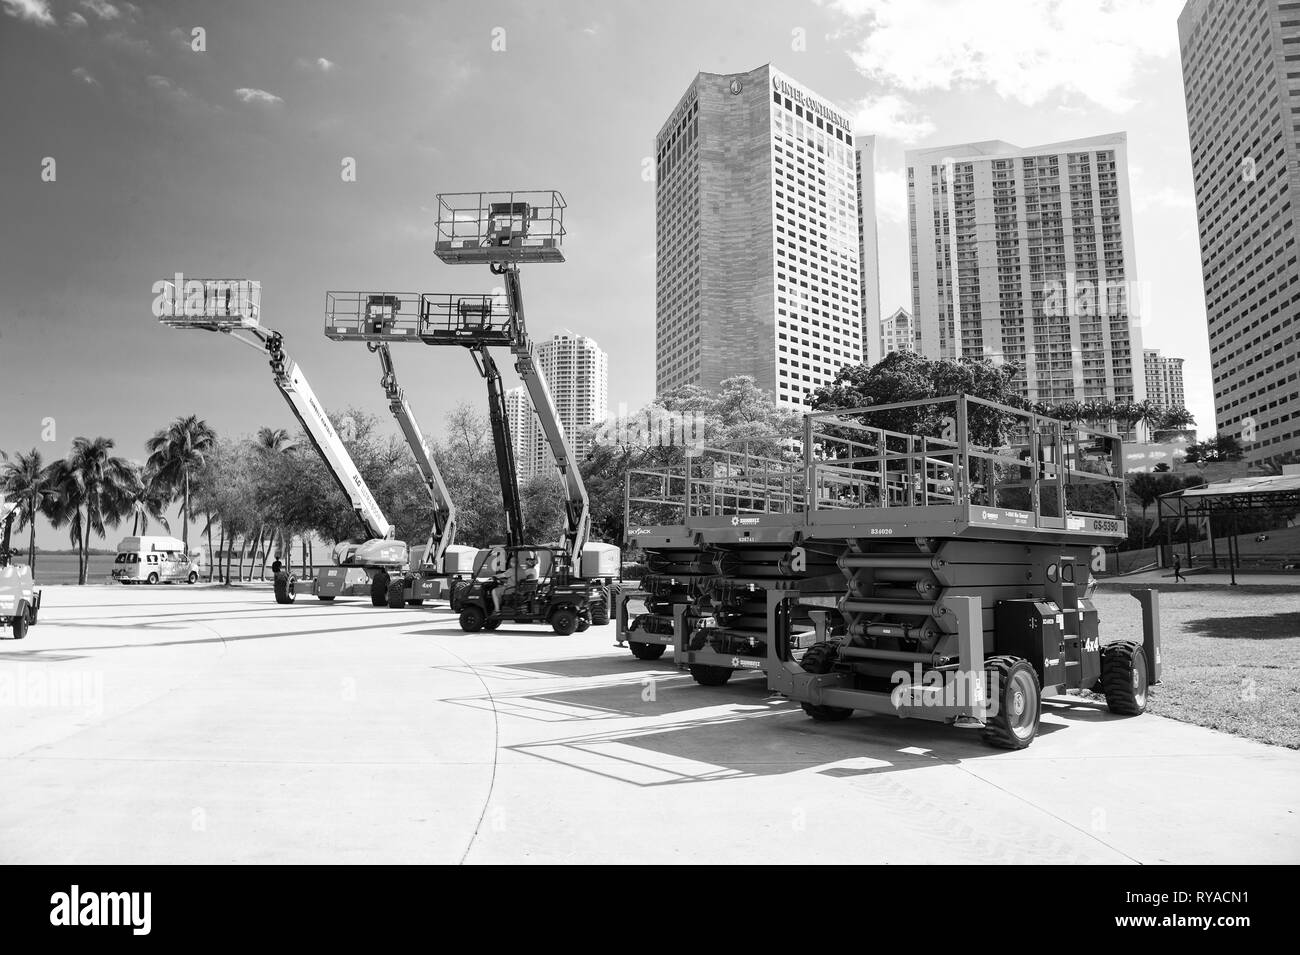 Miami, USA - 29 Février 2016 : plates-formes industrielles mobiles ou de l'équipement avec des ascenseurs sur les roues au salon d'exposition ou l'extérieur dès les beaux Banque D'Images